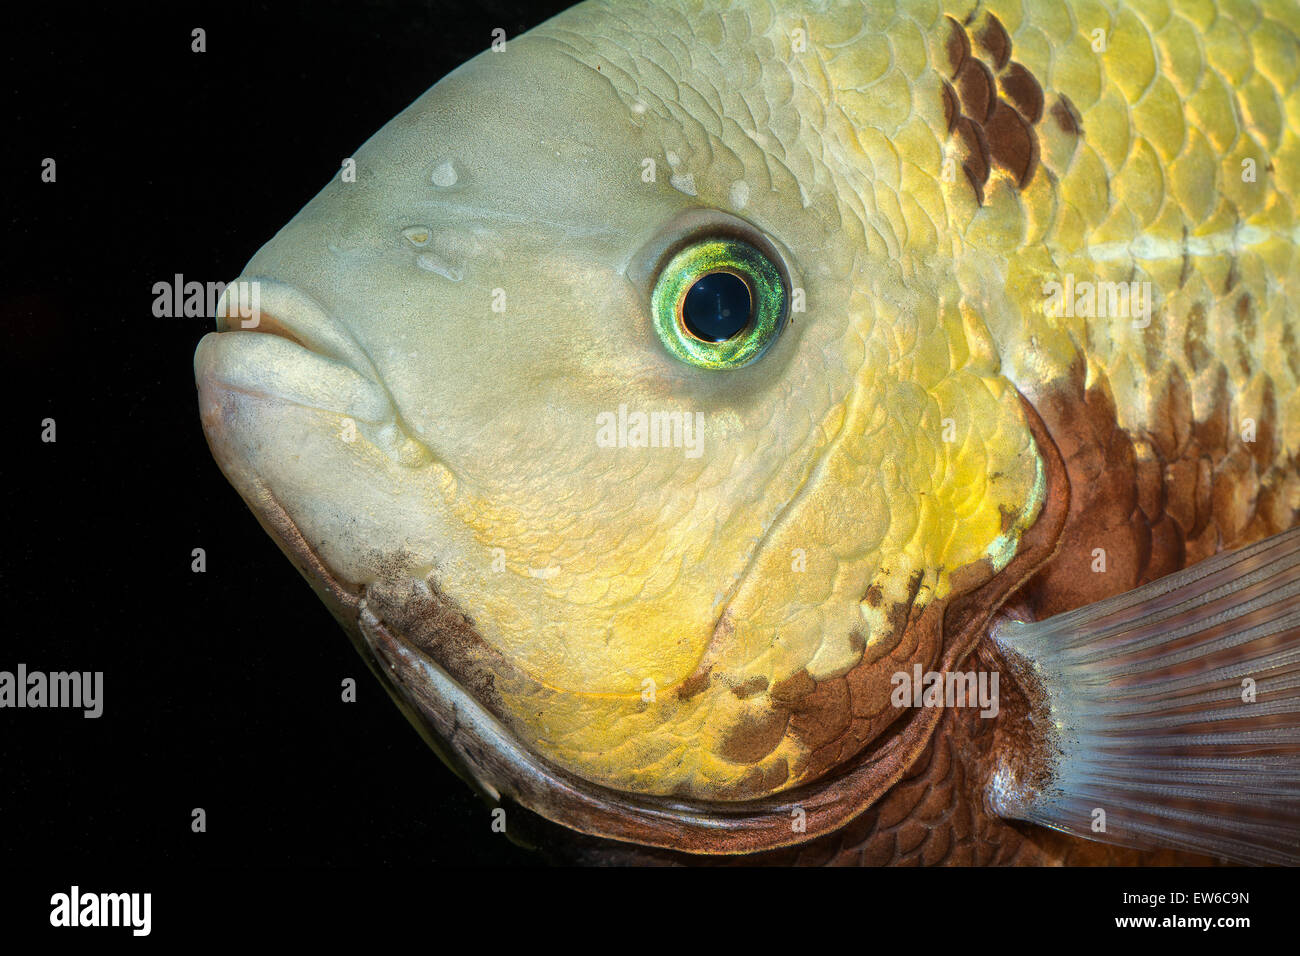 Portrait of cichlid fish frm genus Vieja in the aquarium. Stock Photo